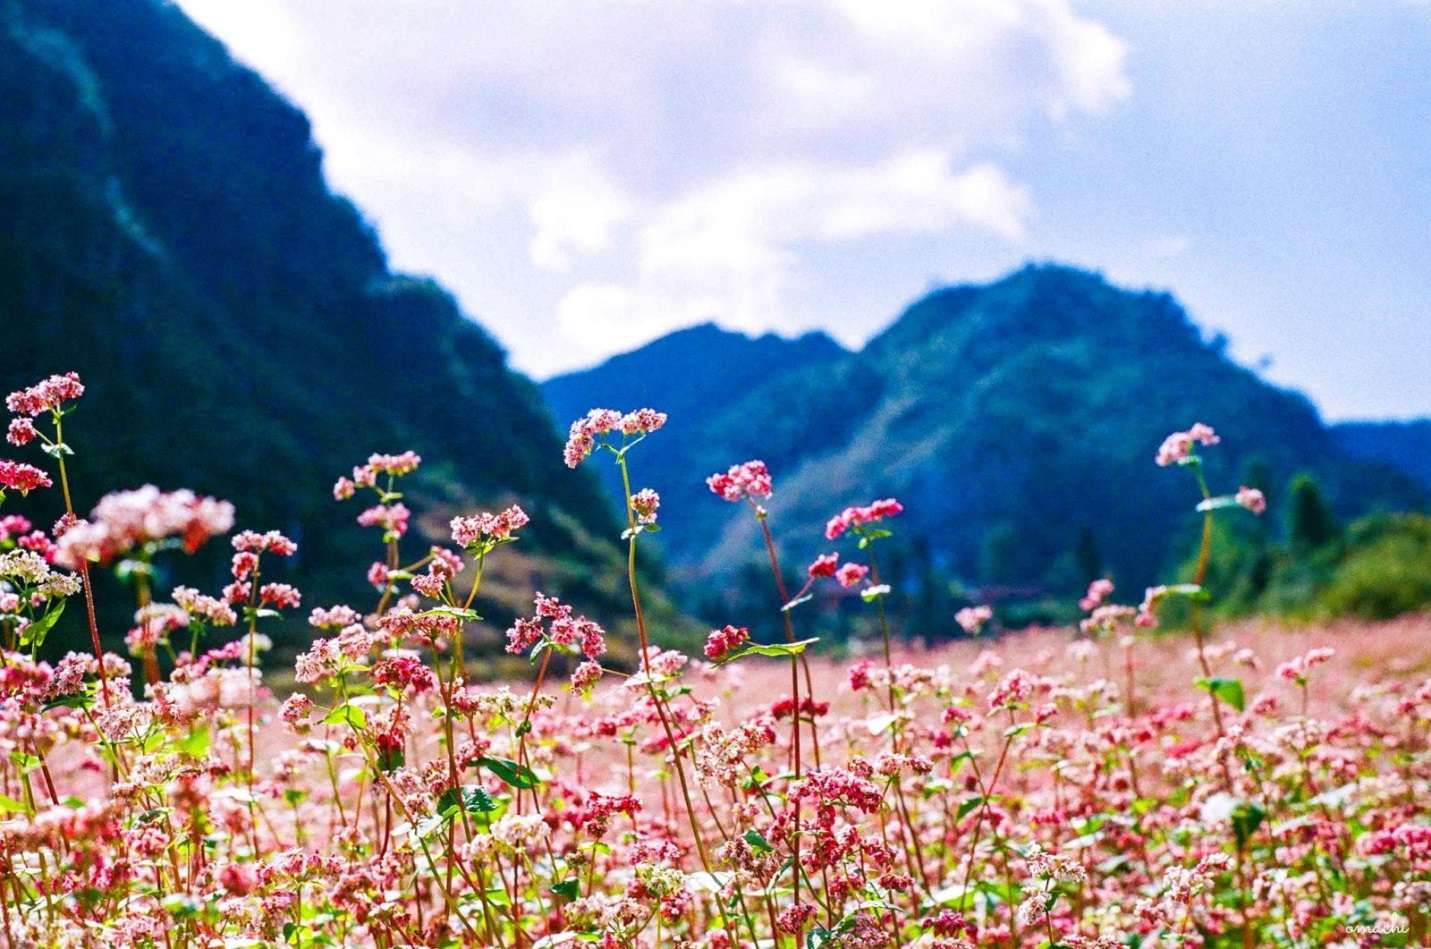 Chút nhẹ nhàng mong manh của hoa tam giác mạch làm cho cảnh núi non hiểm trở ở Hà Giang trở nên hiền hòa hơn rất nhiều